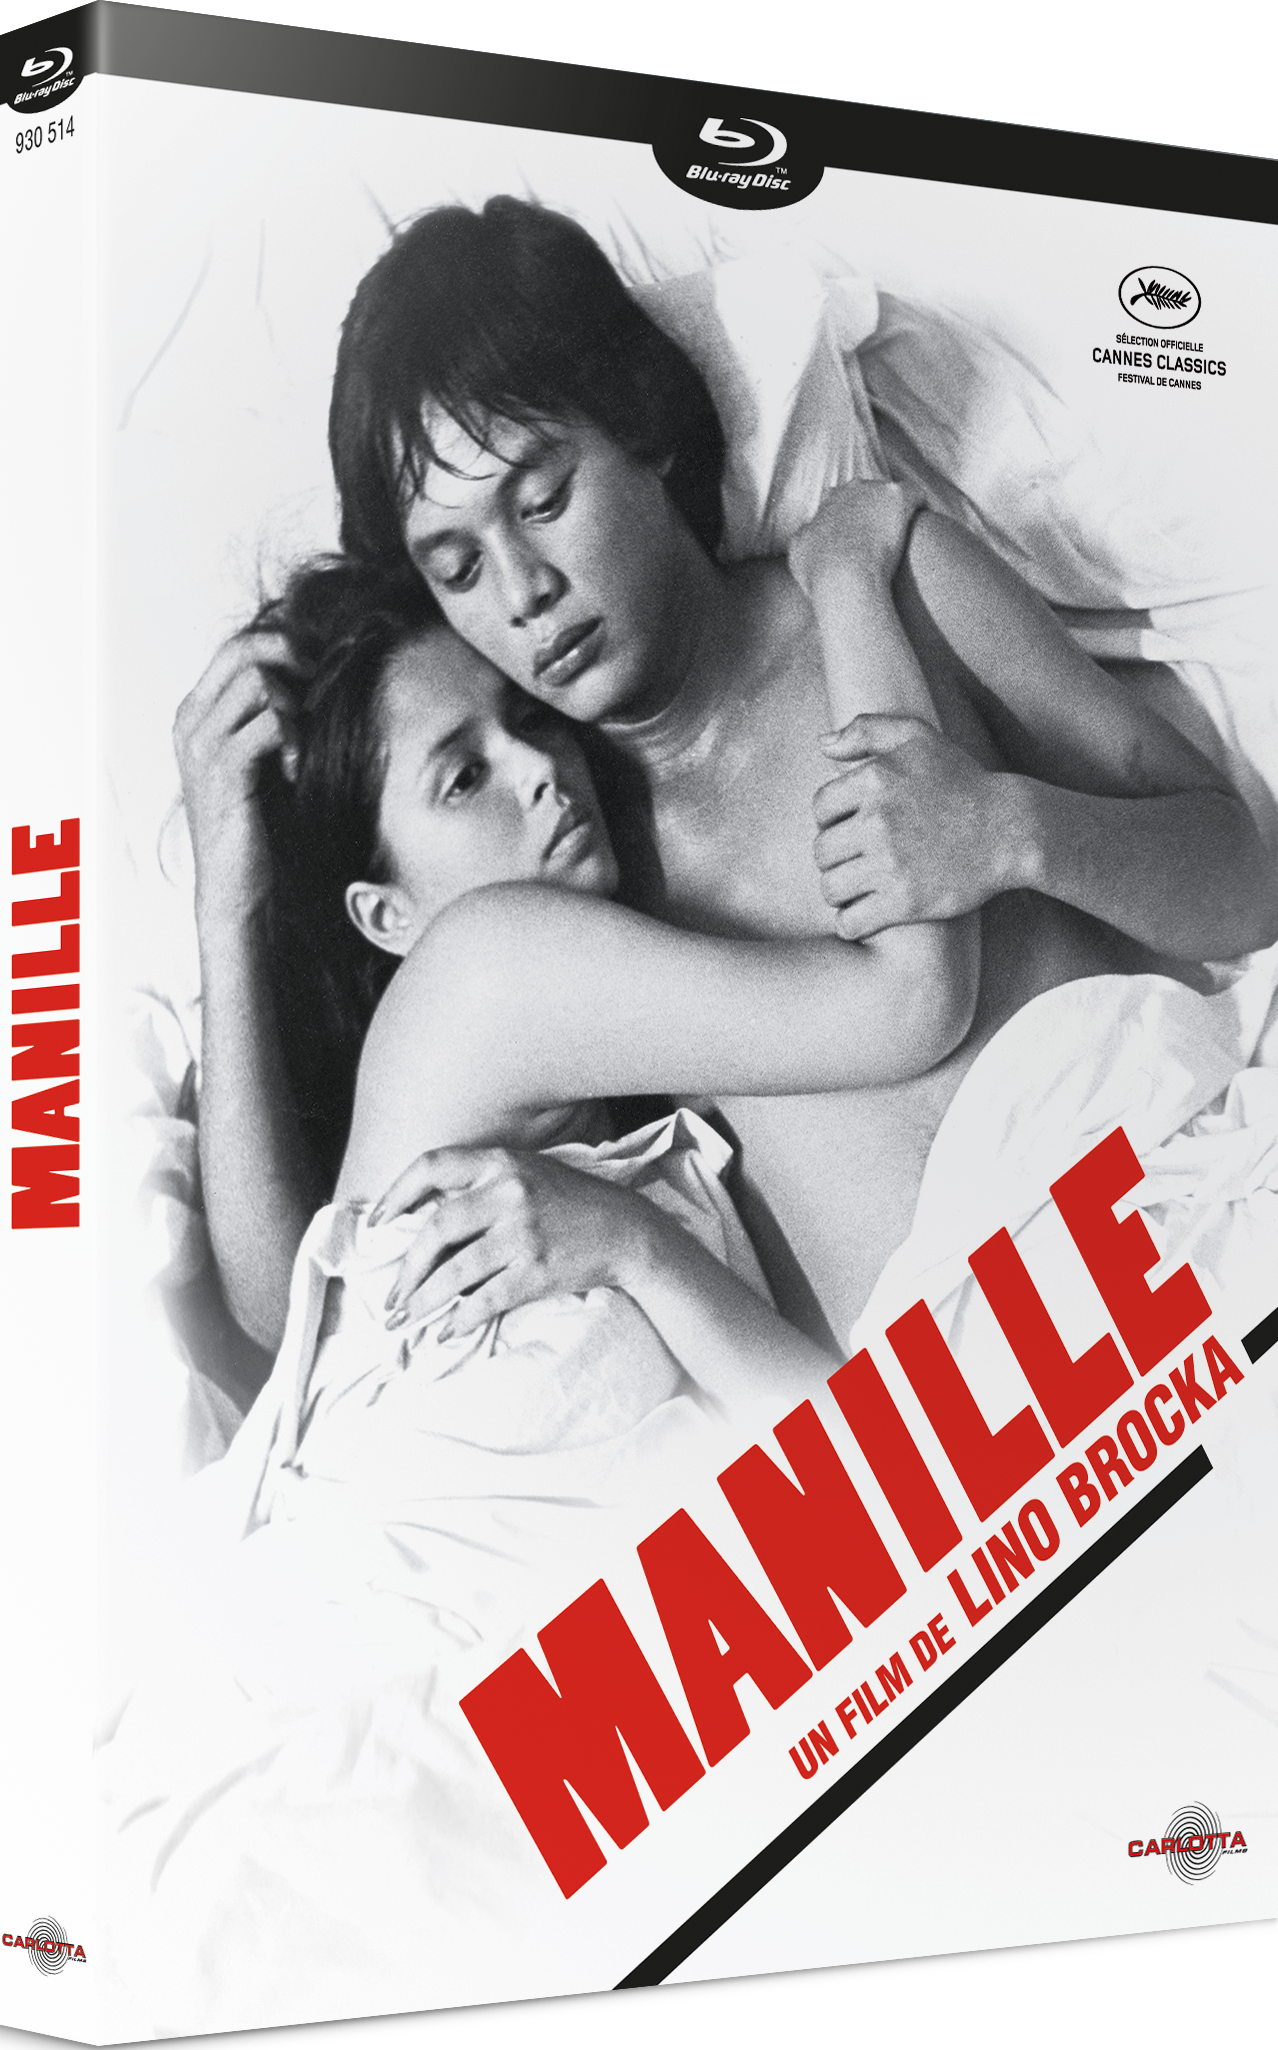 Manille de Lino Brocka - Carlotta Films - La Boutique